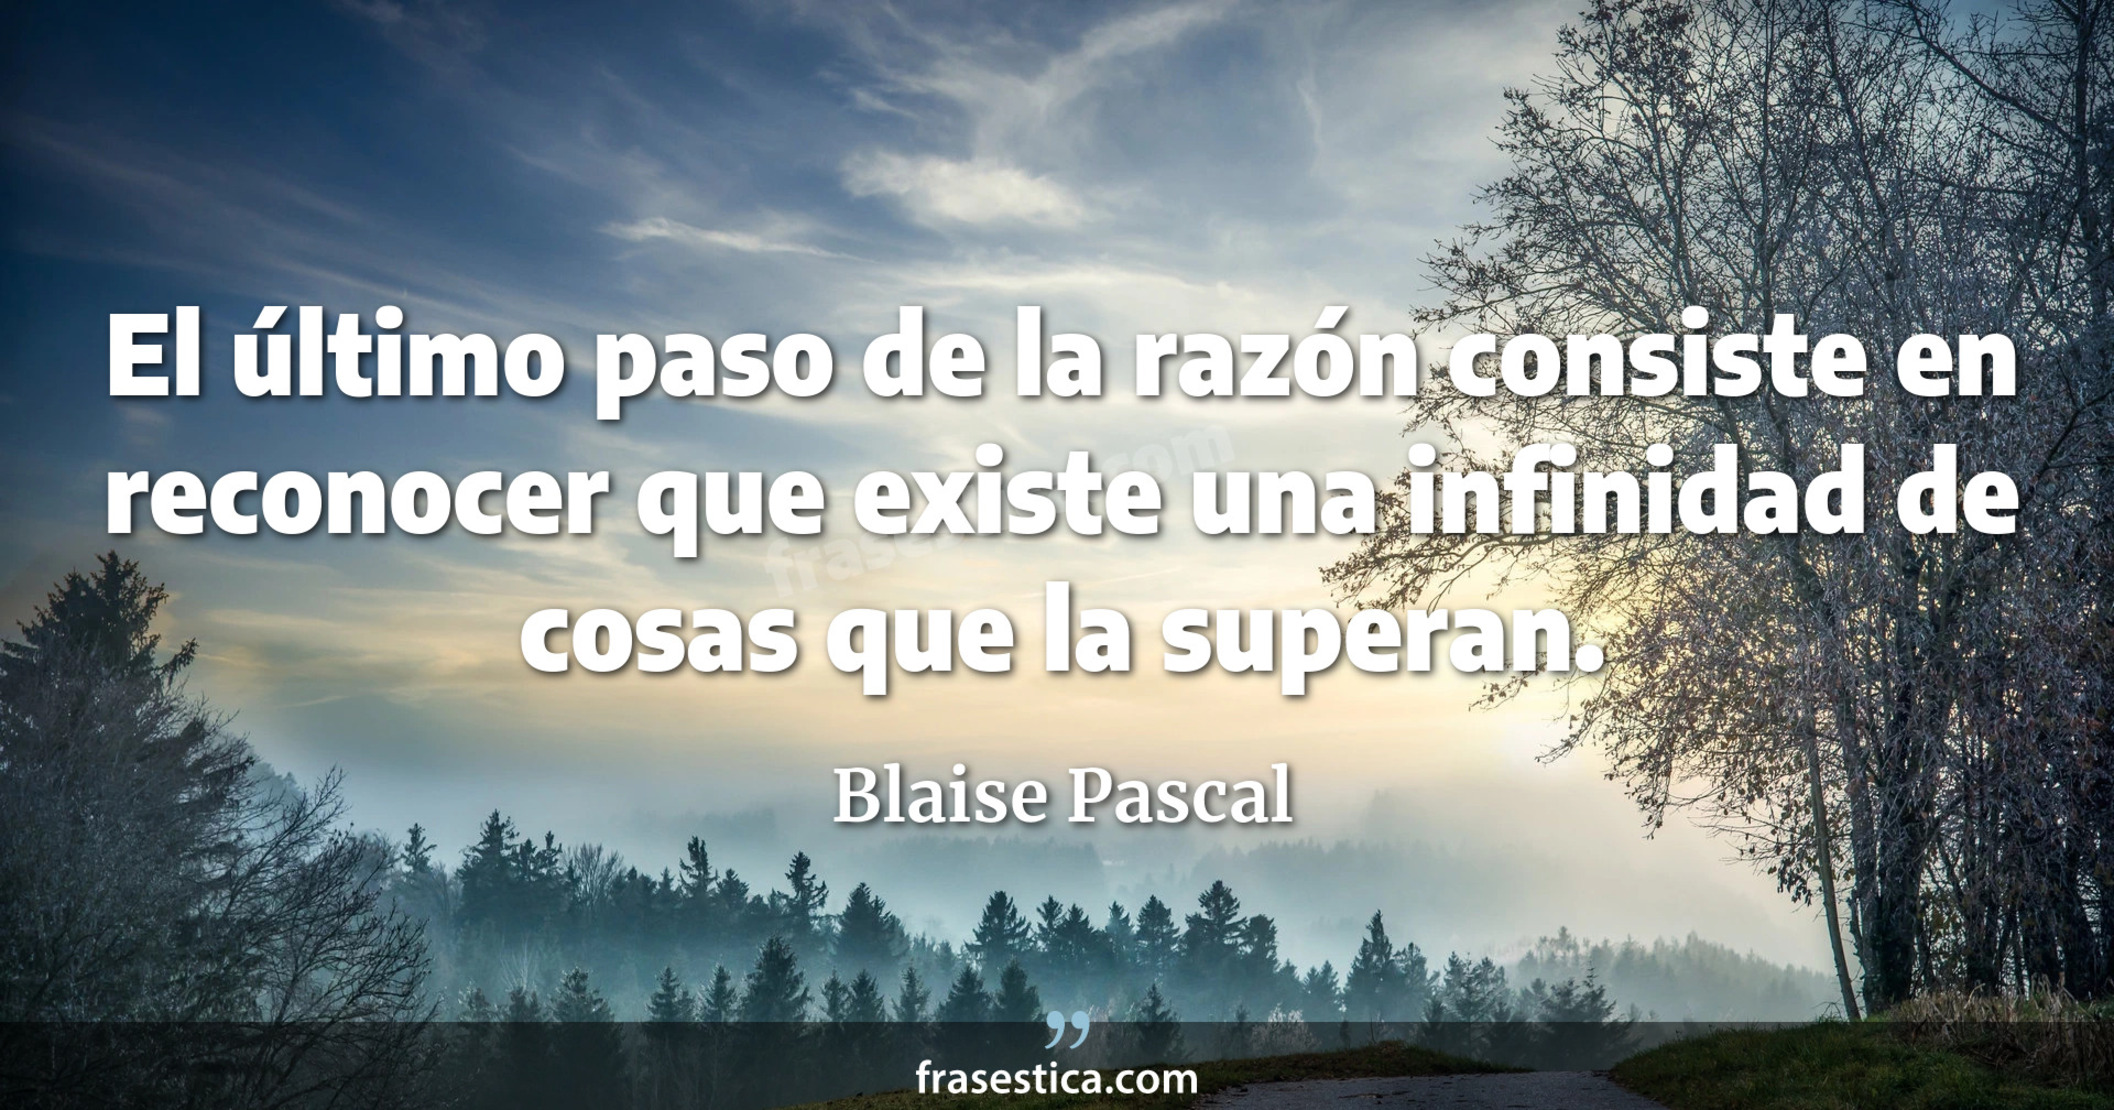 El último paso de la razón consiste en reconocer que existe una infinidad de cosas que la superan. - Blaise Pascal